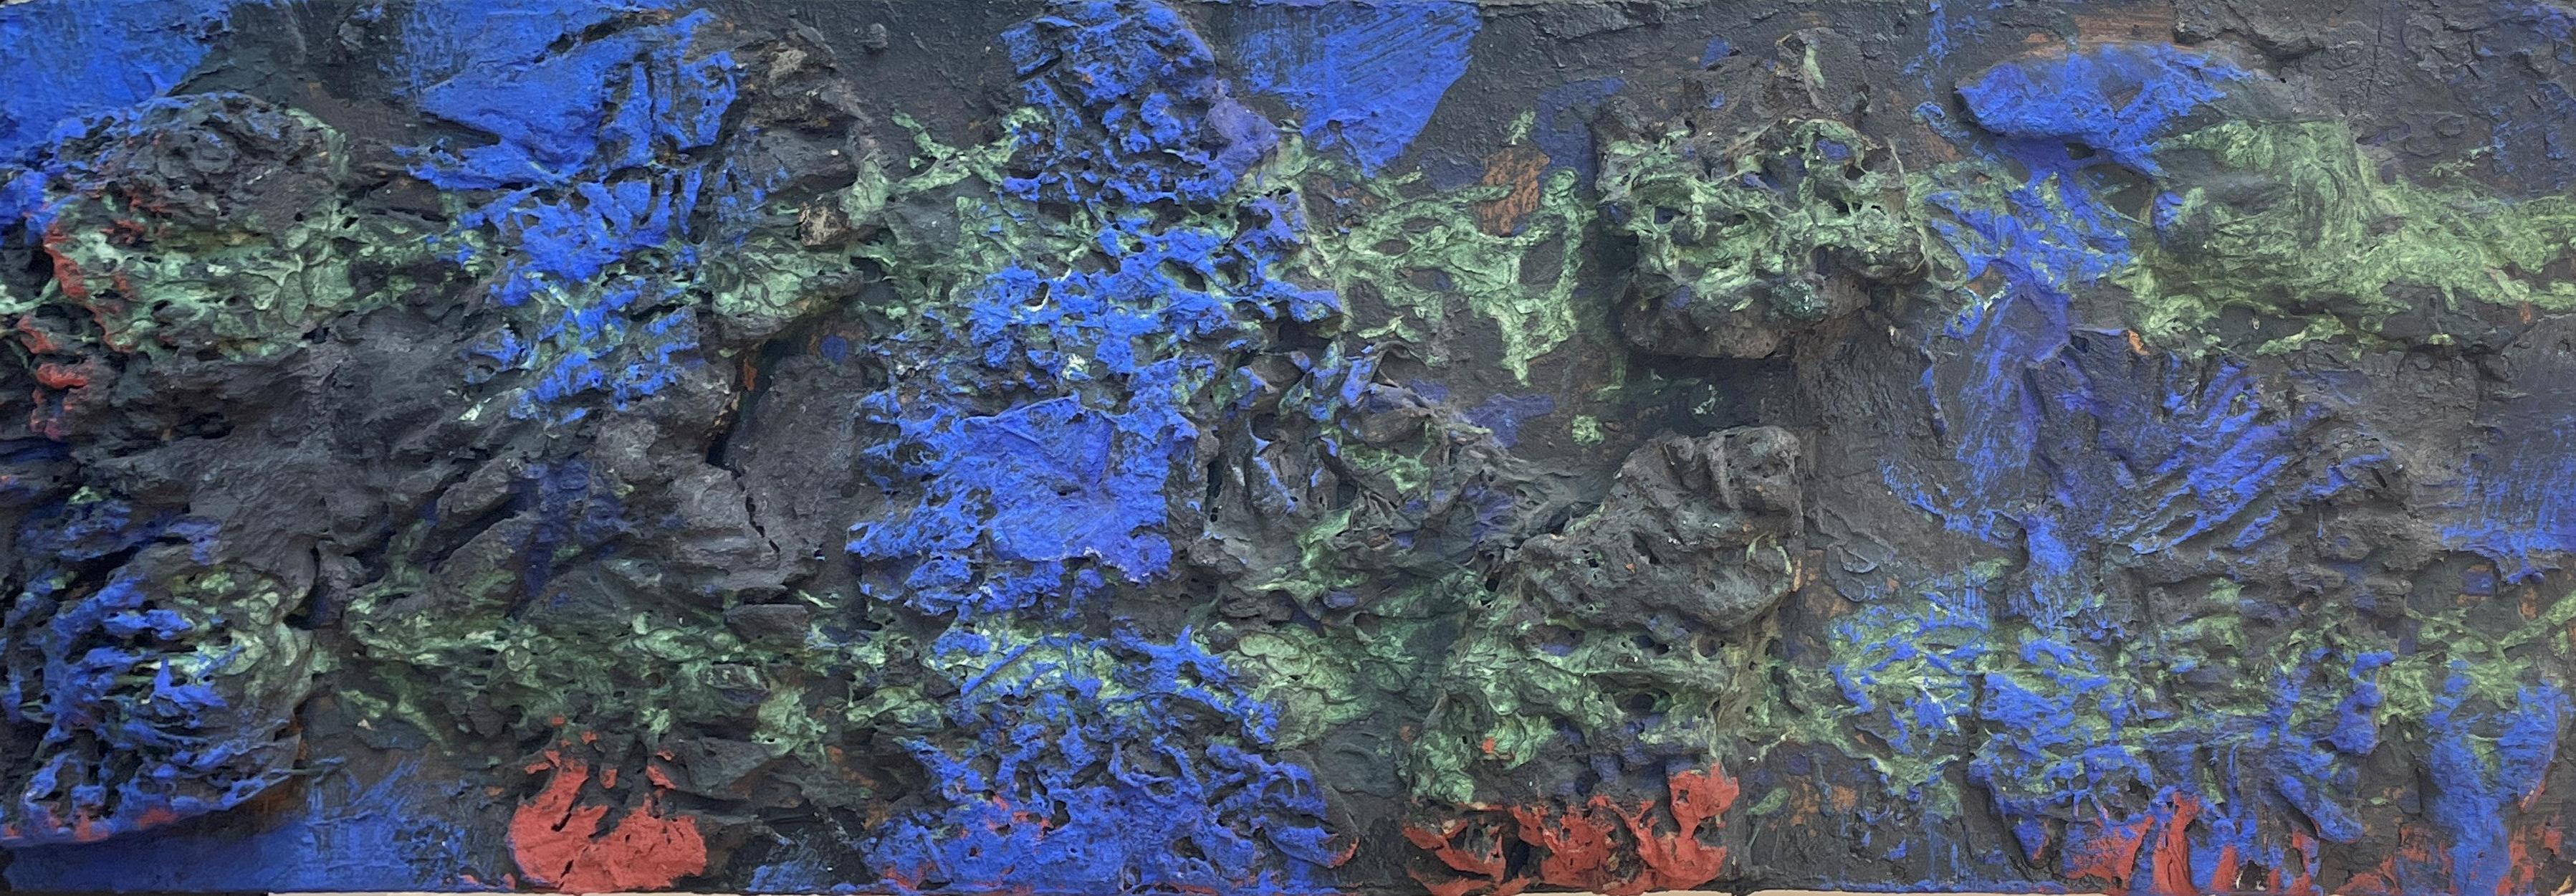 Gerome Kamrowski - « Blue Fossil », surréalisme abstrait, expressionnisme biomorphique